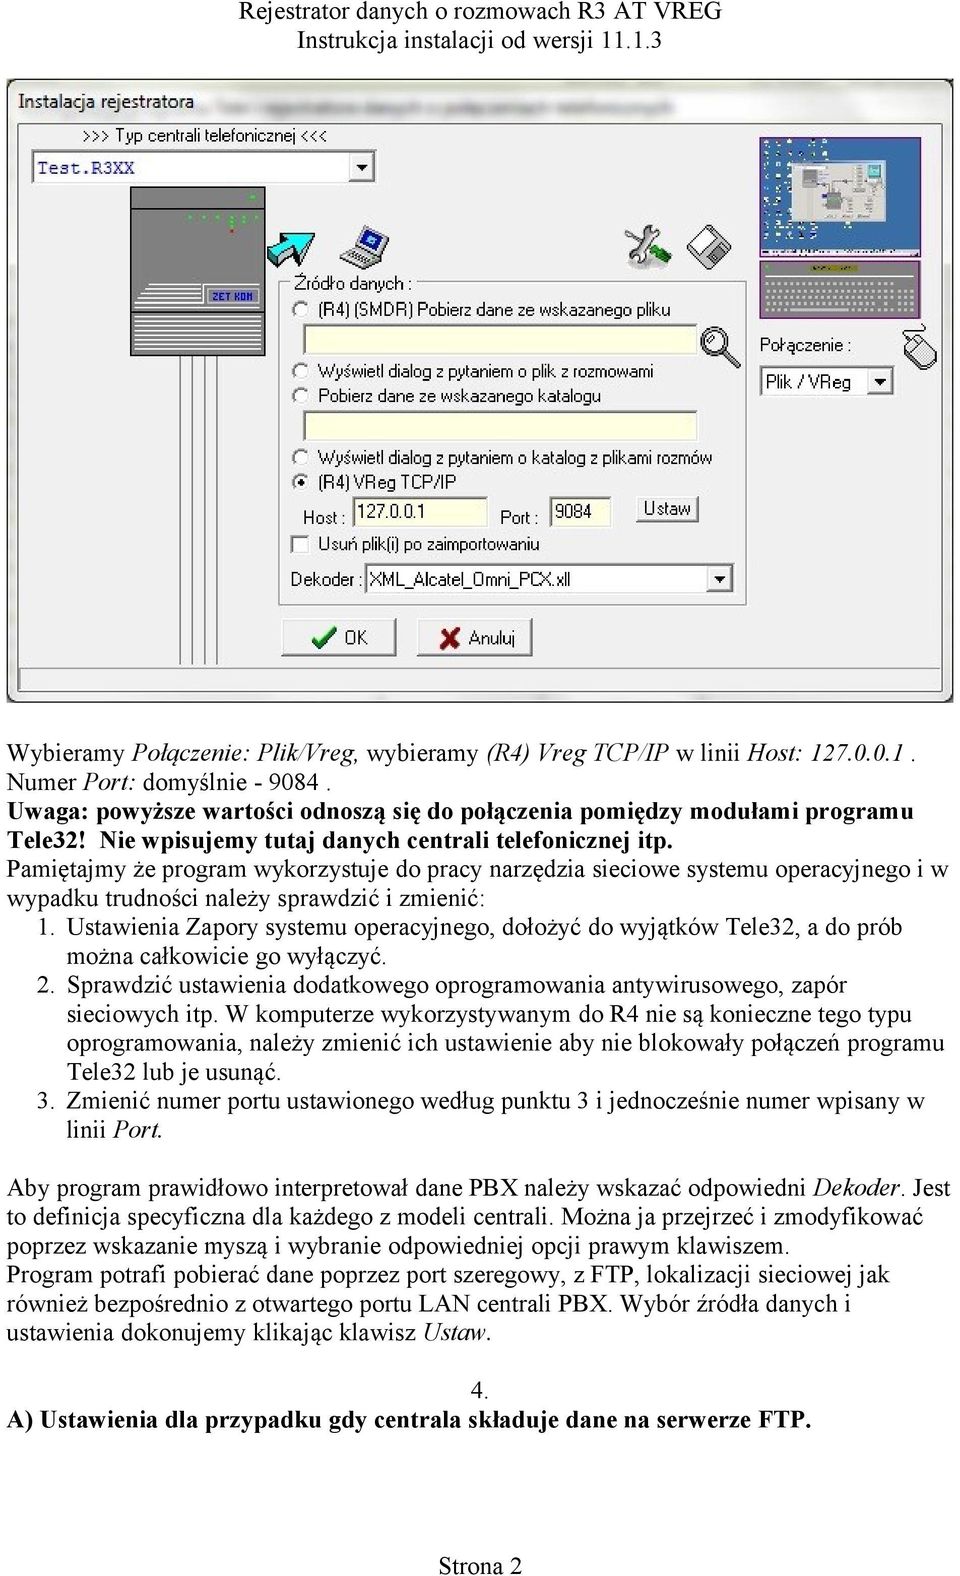 Ustawienia Zapory systemu operacyjnego, dołożyć do wyjątków Tele32, a do prób można całkowicie go wyłączyć. 2. Sprawdzić ustawienia dodatkowego oprogramowania antywirusowego, zapór sieciowych itp.